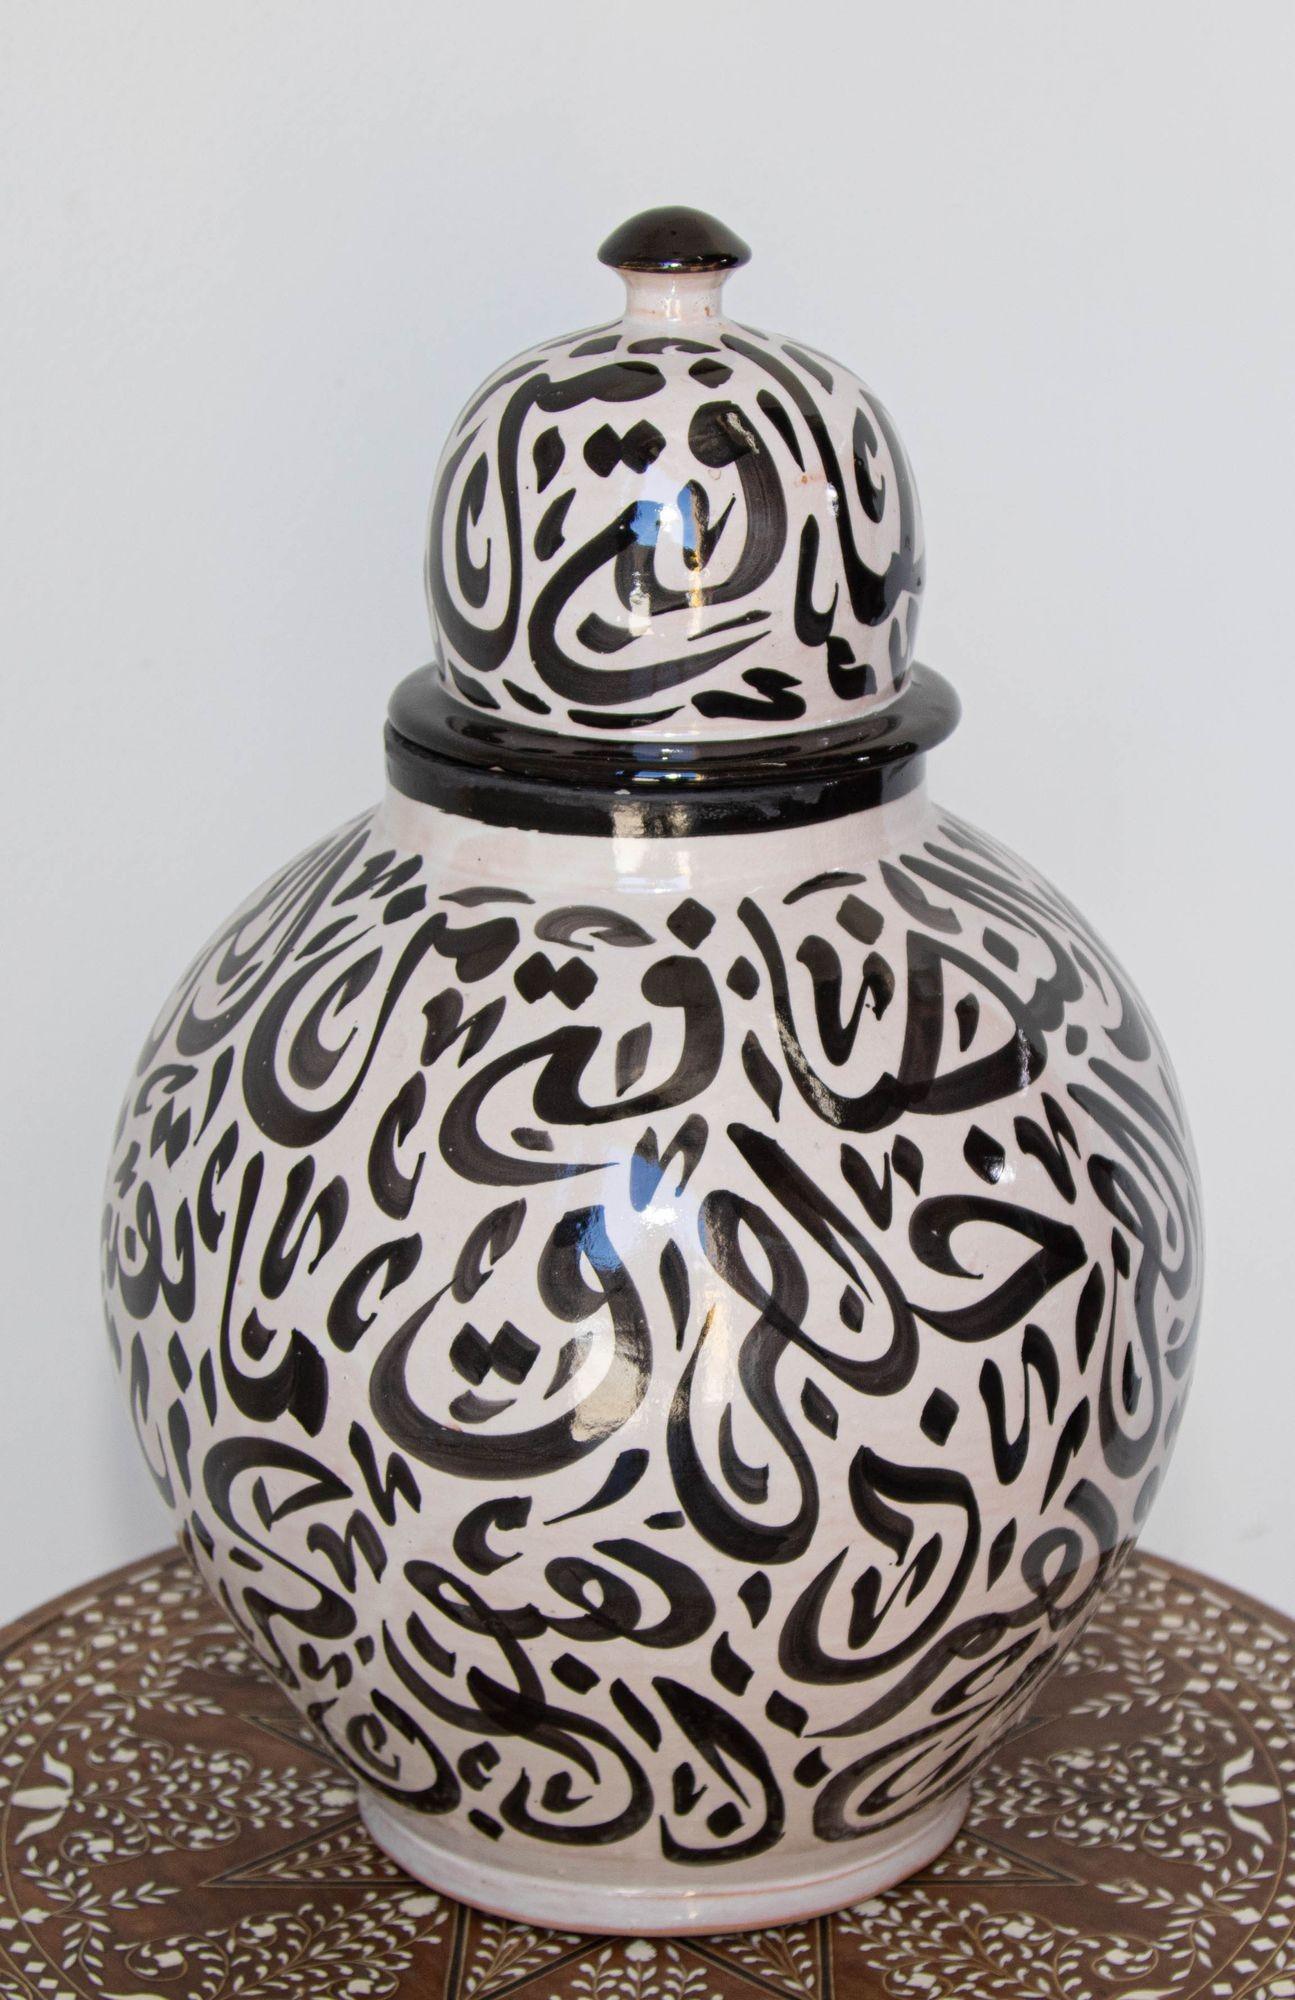 Grande urne marocaine en céramique émaillée bleu royal avec couvercle, provenant de Fès.
Céramique vintage de style mauresque fabriquée et peinte à la main avec une écriture en calligraphie arabe.
Ce type d'écriture artistique aux allures